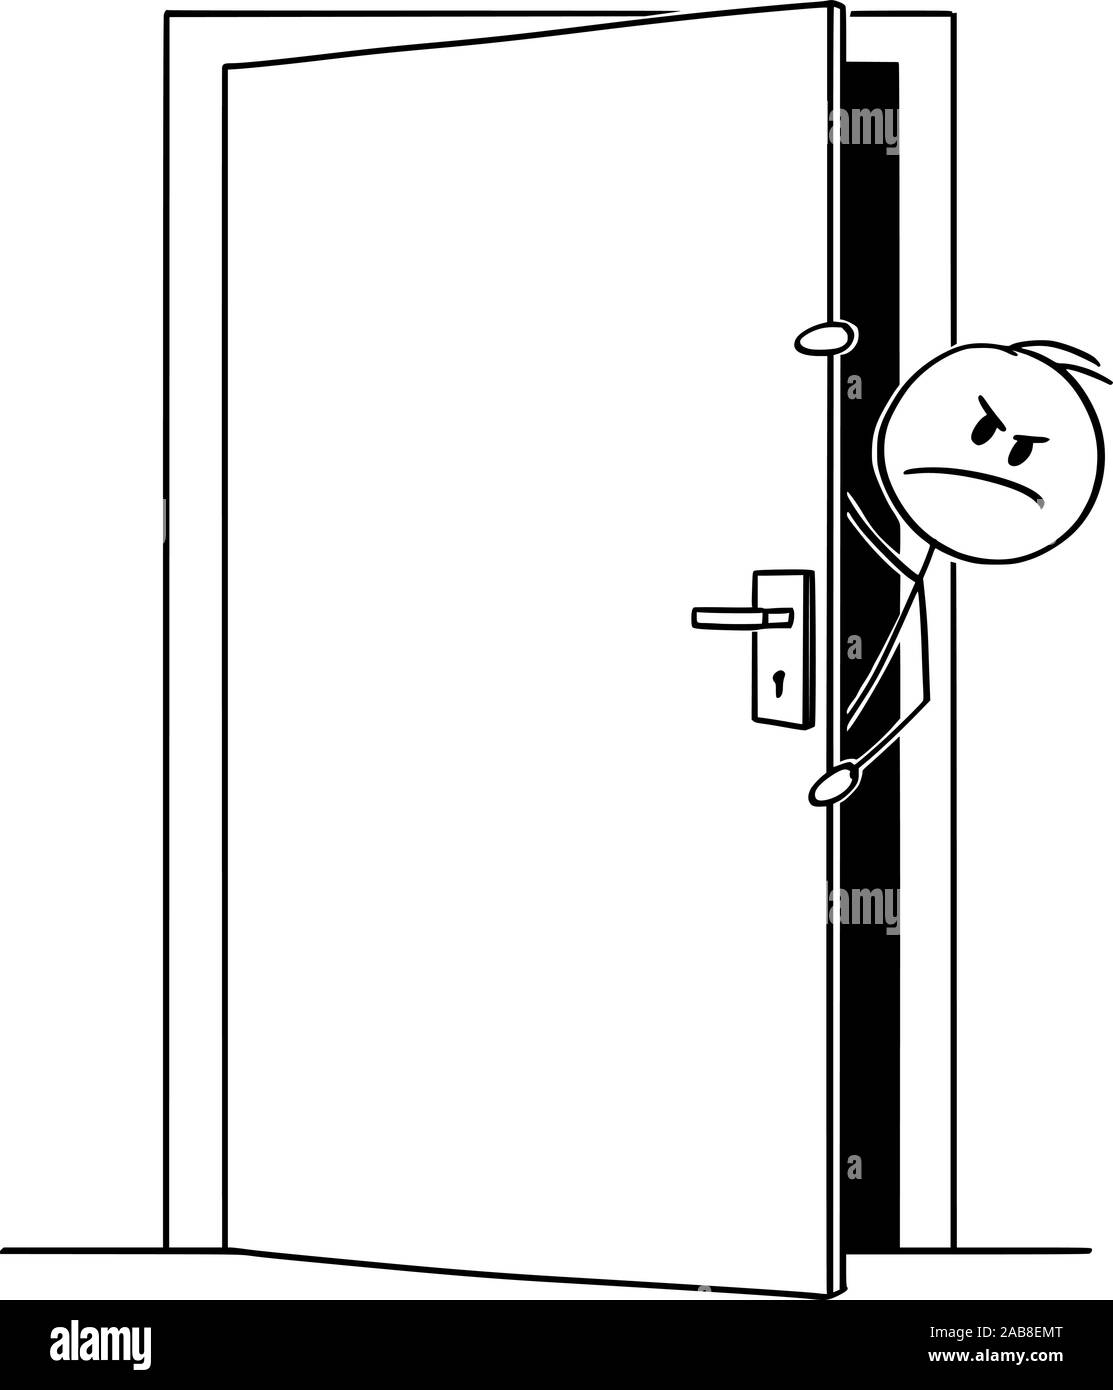 Vektor cartoon Strichmännchen Zeichnen konzeptionelle Darstellung der zornigen Mann oder Geschäftsmann heraus lugen oder schauen aus dem leicht geöffneten Tür. Stock Vektor